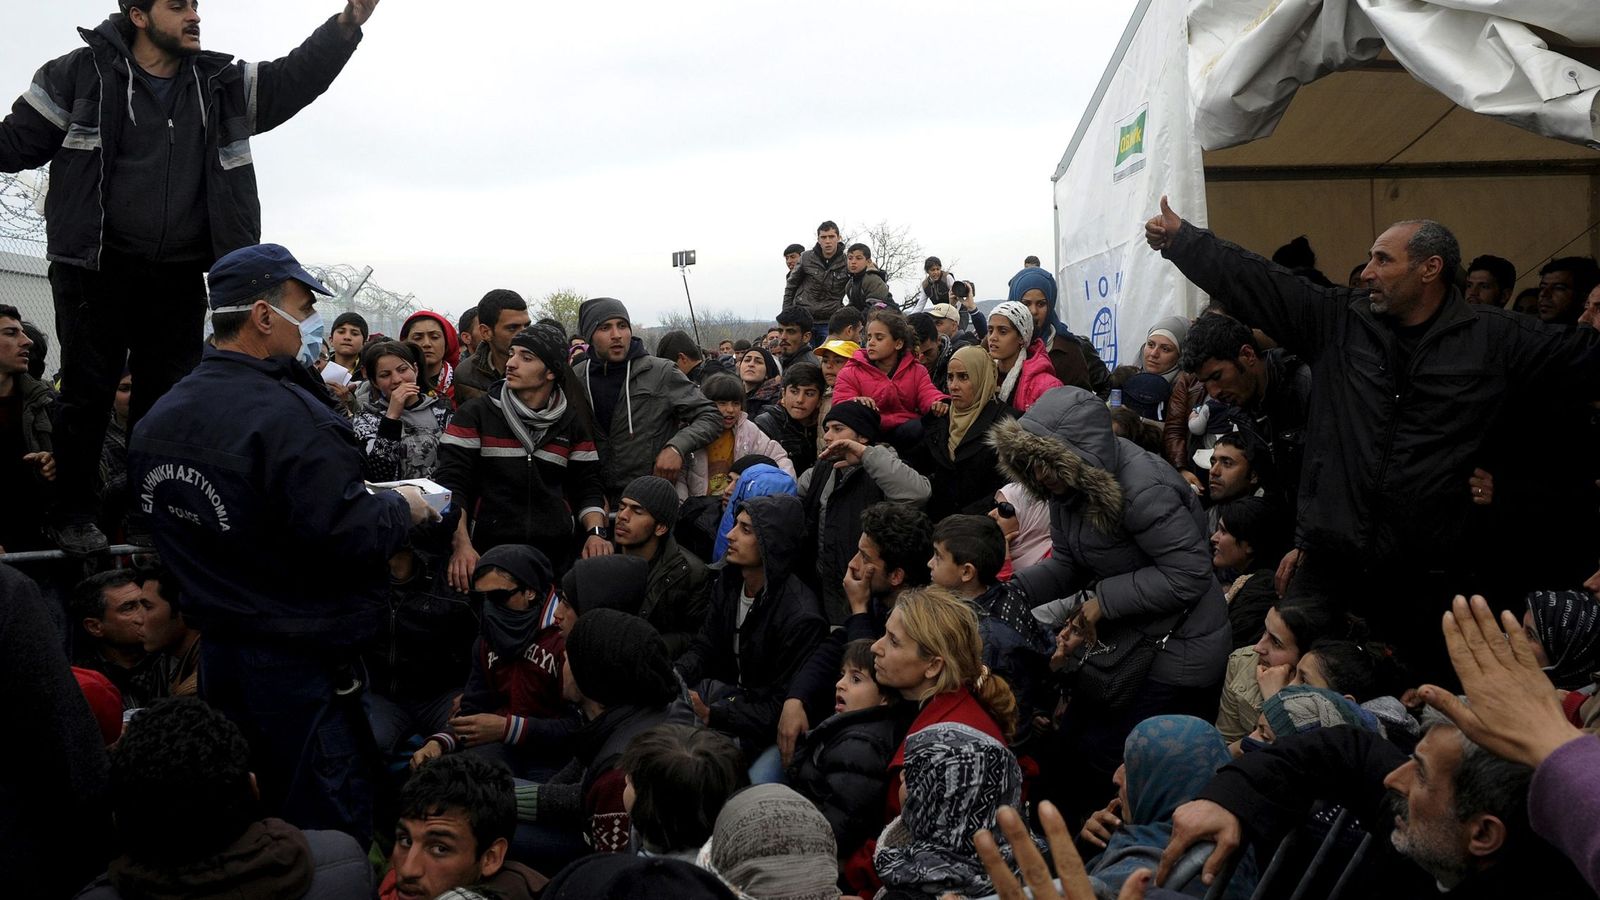 Foto: Refugiados y migrantes esperan para cruzar la frontera entre Grecia y Macedonia, en Idomeni, el 6 de marzo de 2016 (Reuters).